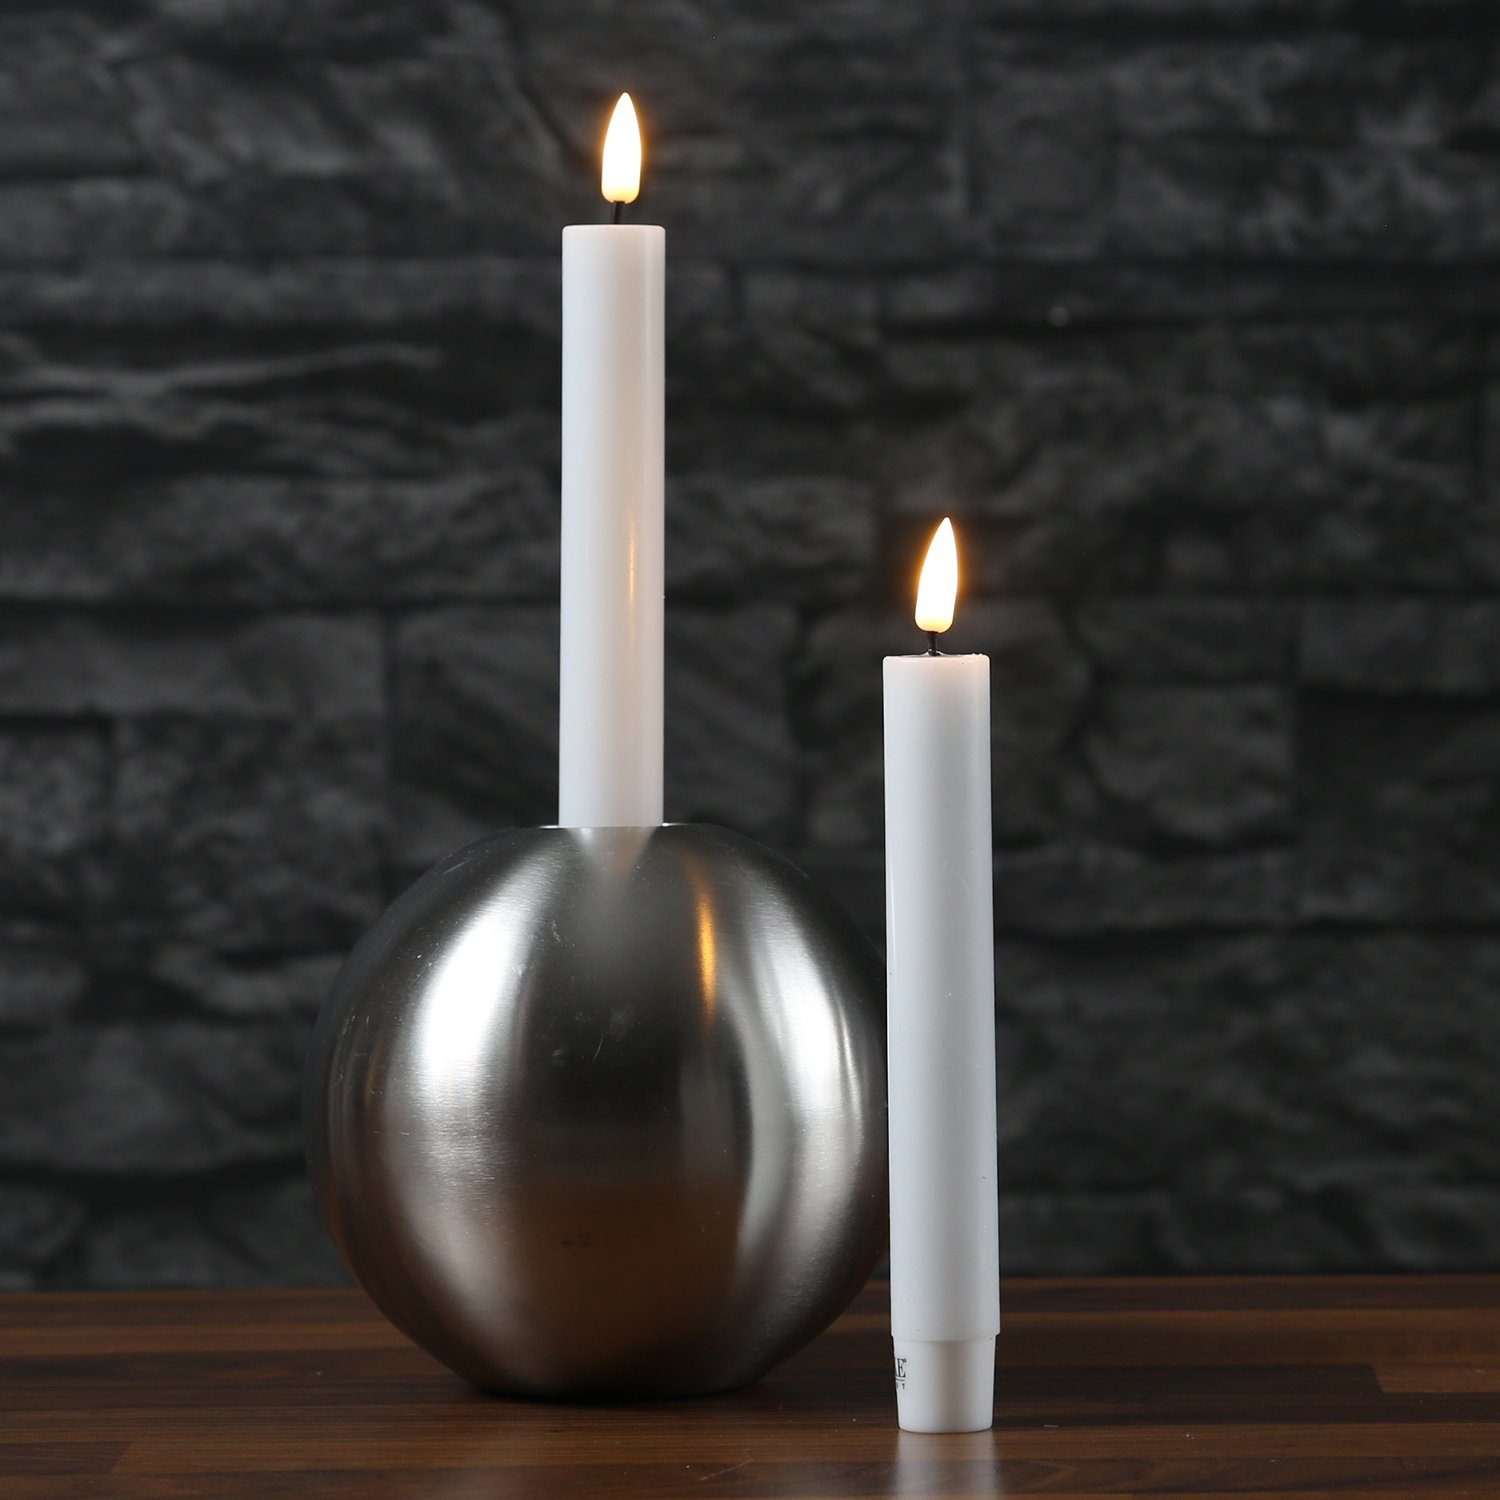 Deluxe Homeart LED-Kerze LED Паличні свічки Mia Tafelkerzen Echtwachs flackernd H: 15cm weiß 2Stk (2-tlg)